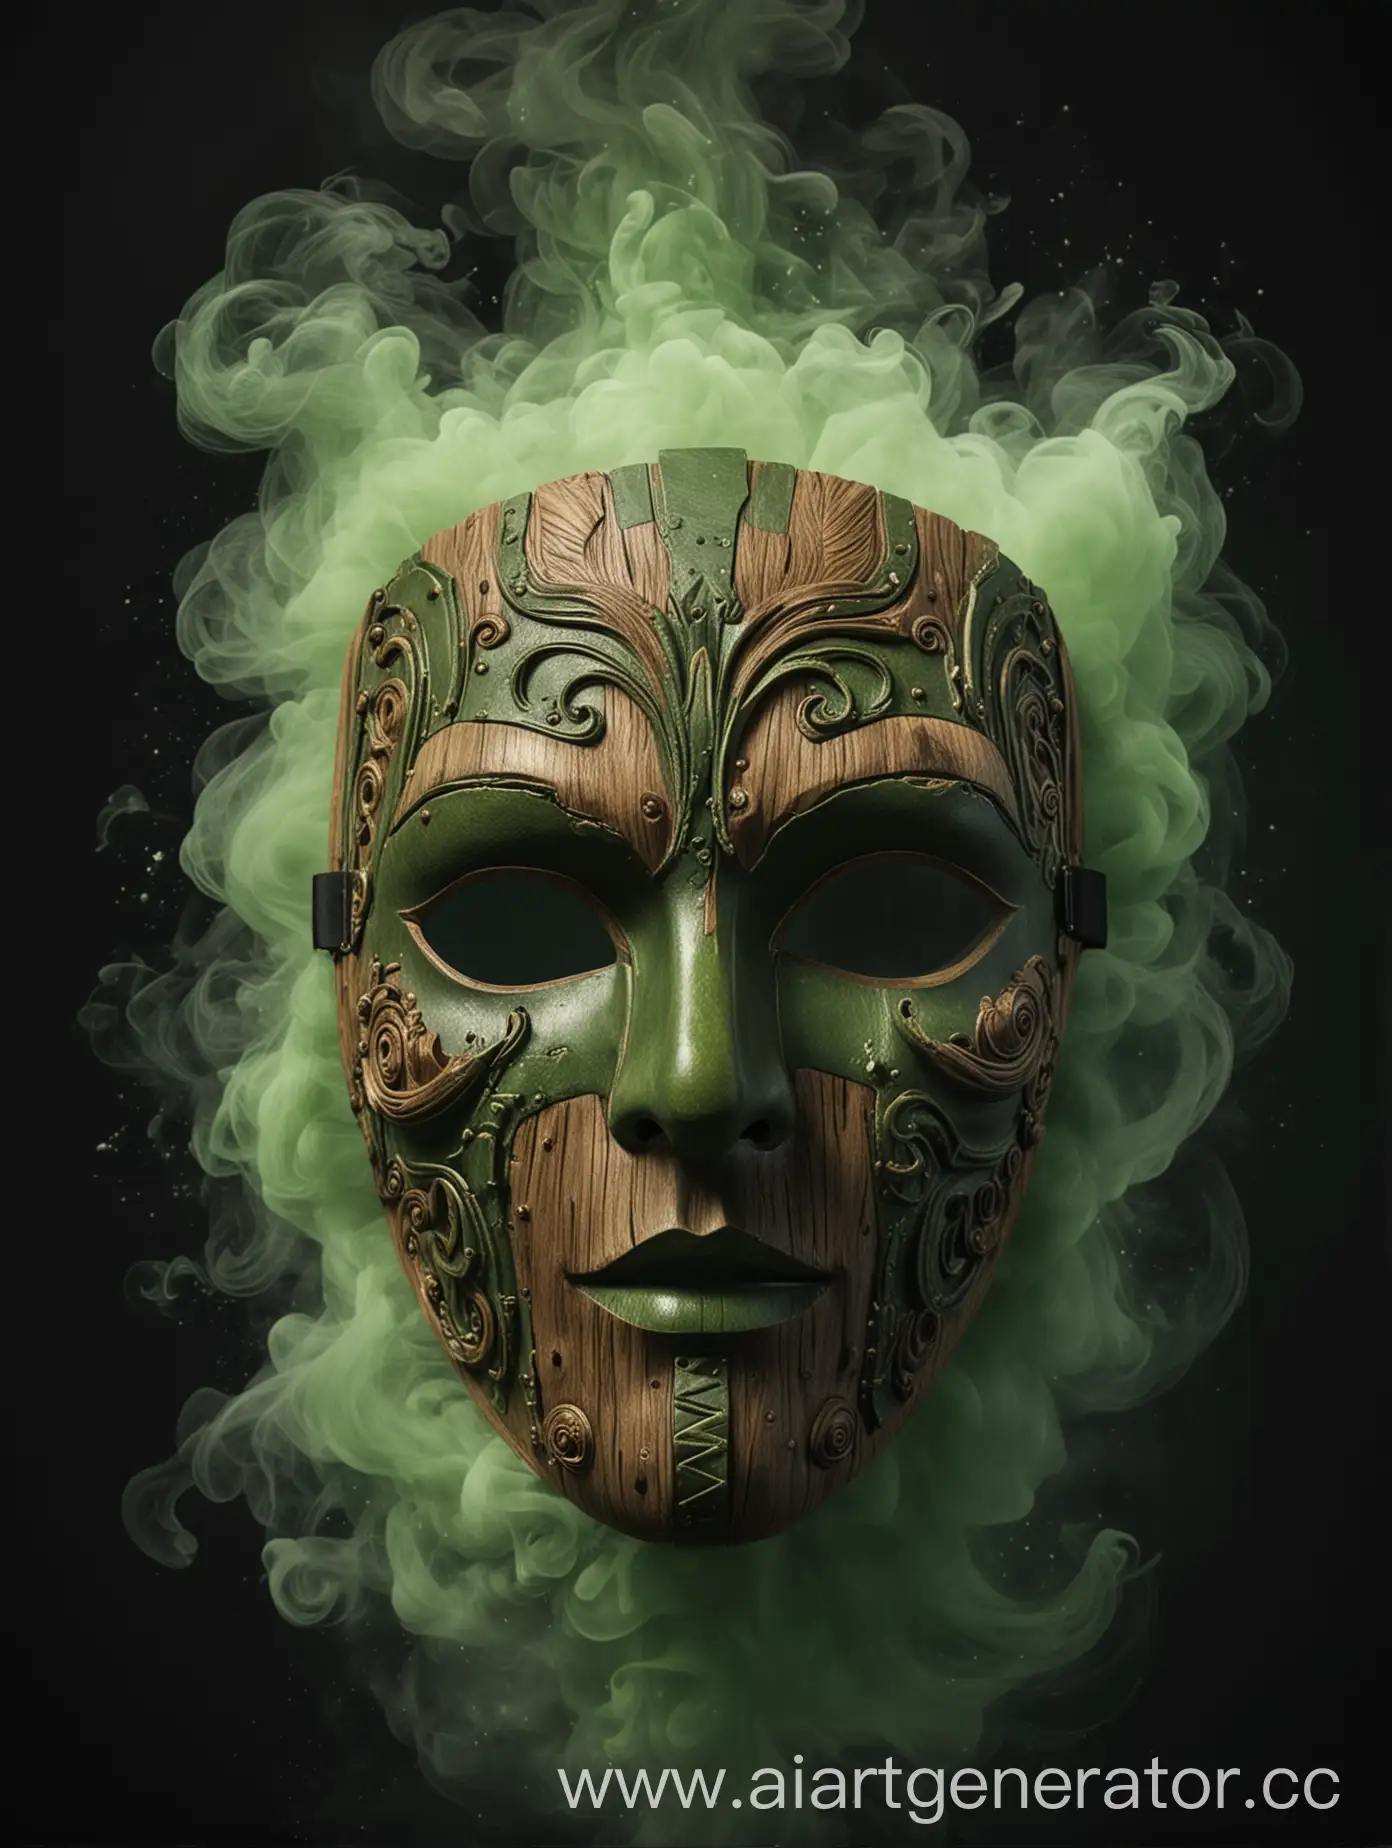 Постер фильма,Деревянная магическая маска,вокруг зелёный дым,черный задний фон,название фильма Маска,4к,реалистично,от студии 20 century fox.